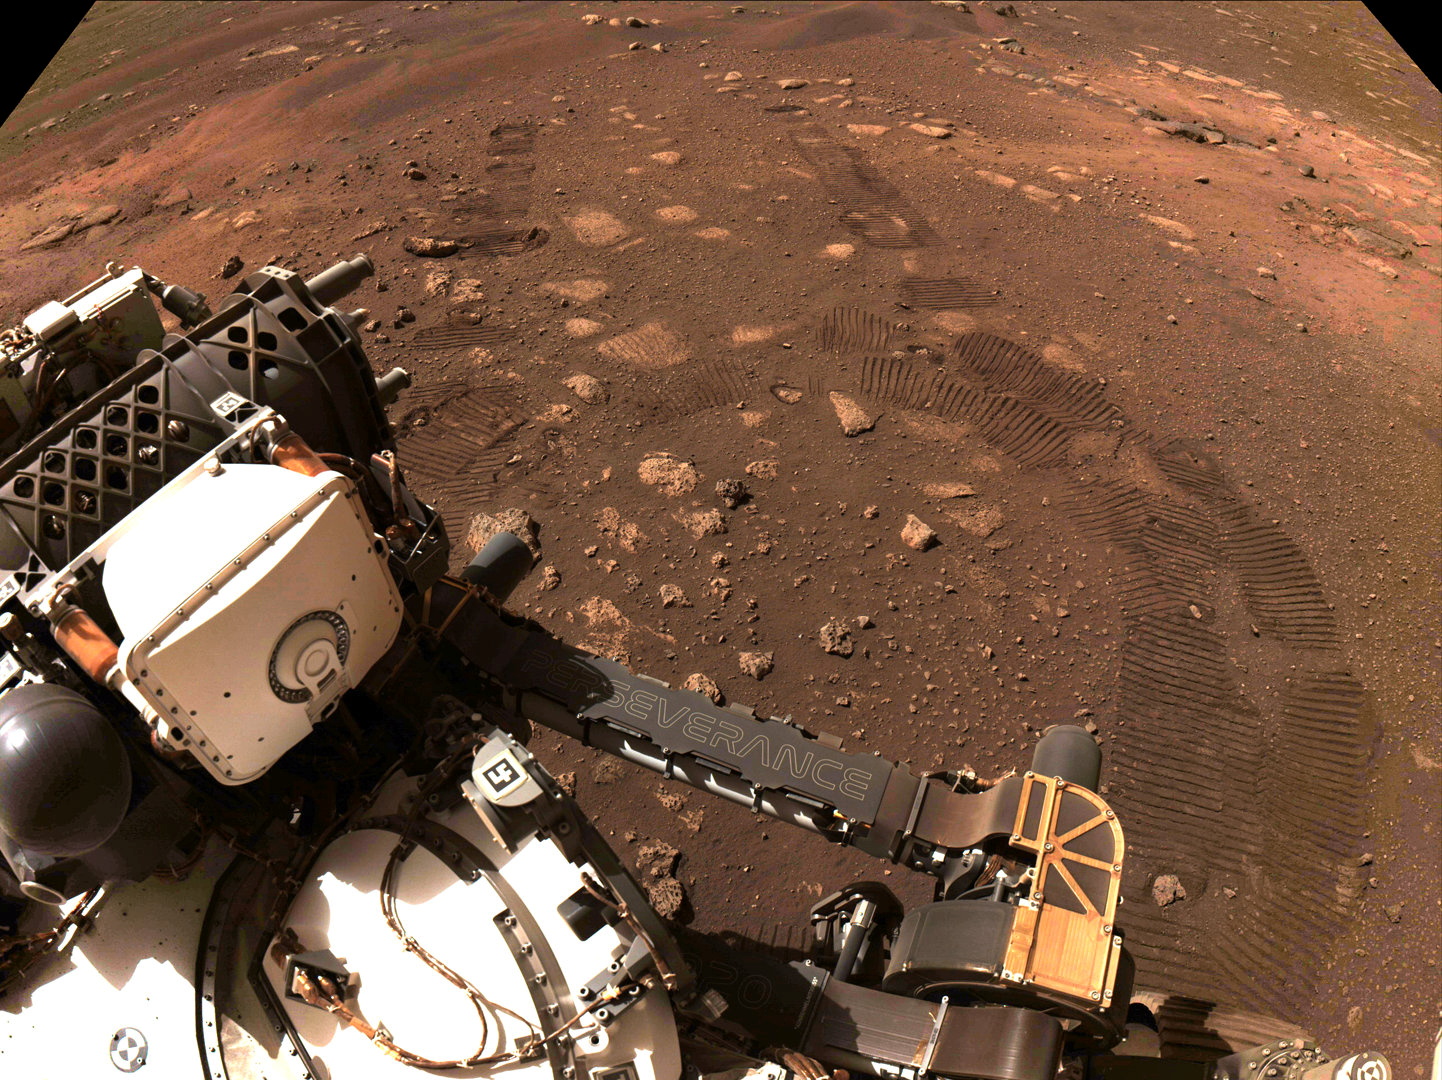 El vehículo logró la compleja tarea que hace soñar a futuras generaciones sobre la posibilidad de respirar oxígeno producido en Marte, sin necesidad de transportarlo desde la Tierra. NASA/JPL-Caltech/Handout via REUTERS 